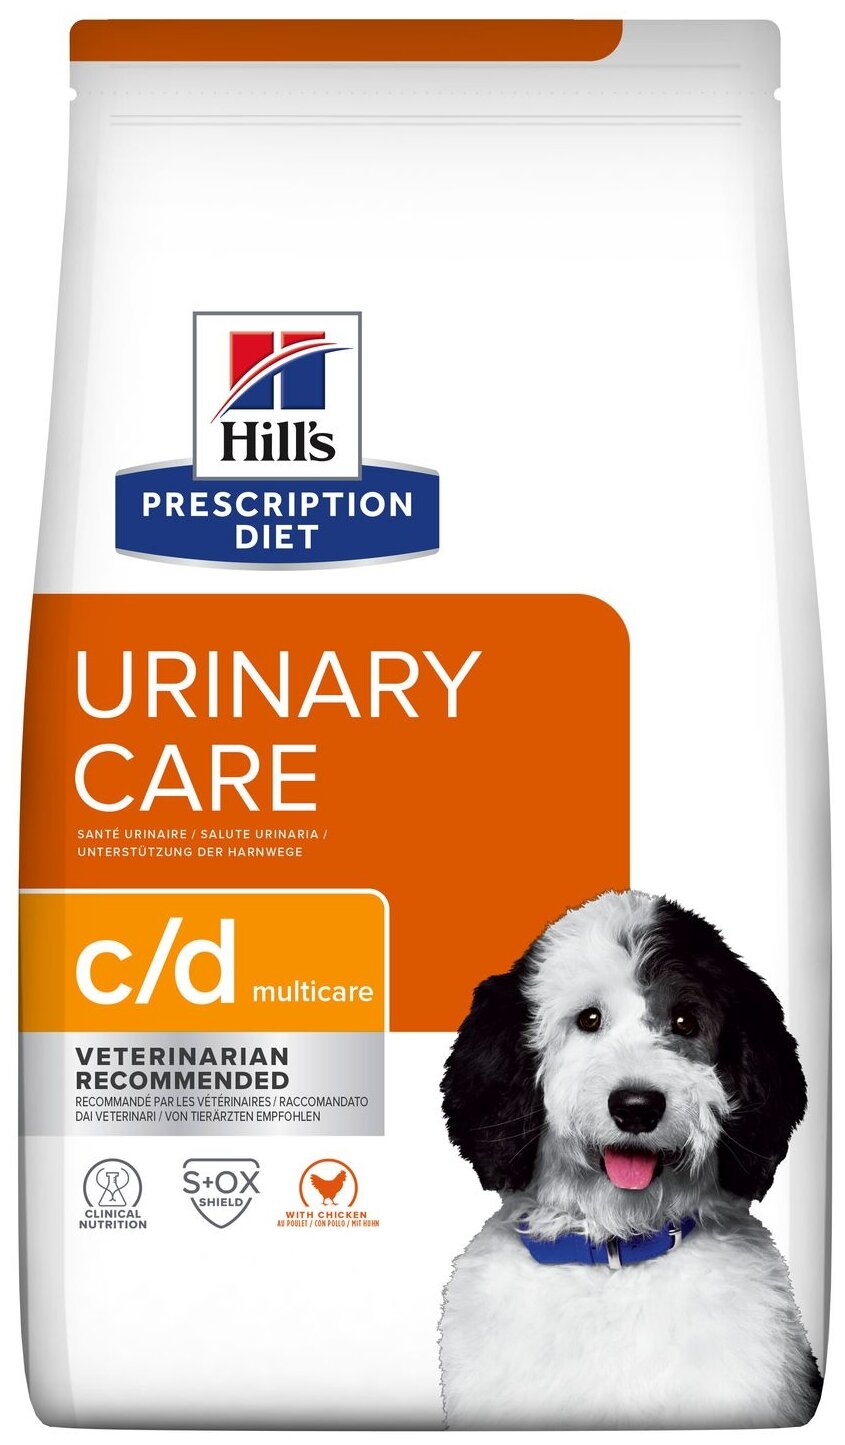 Сухой диетический корм для собак Hill's Prescription Diet c/d Multicare Urinary Care при профилактике мочекаменной болезни (мкб), с курицей, 1,5кг (срок годности 09.2024)